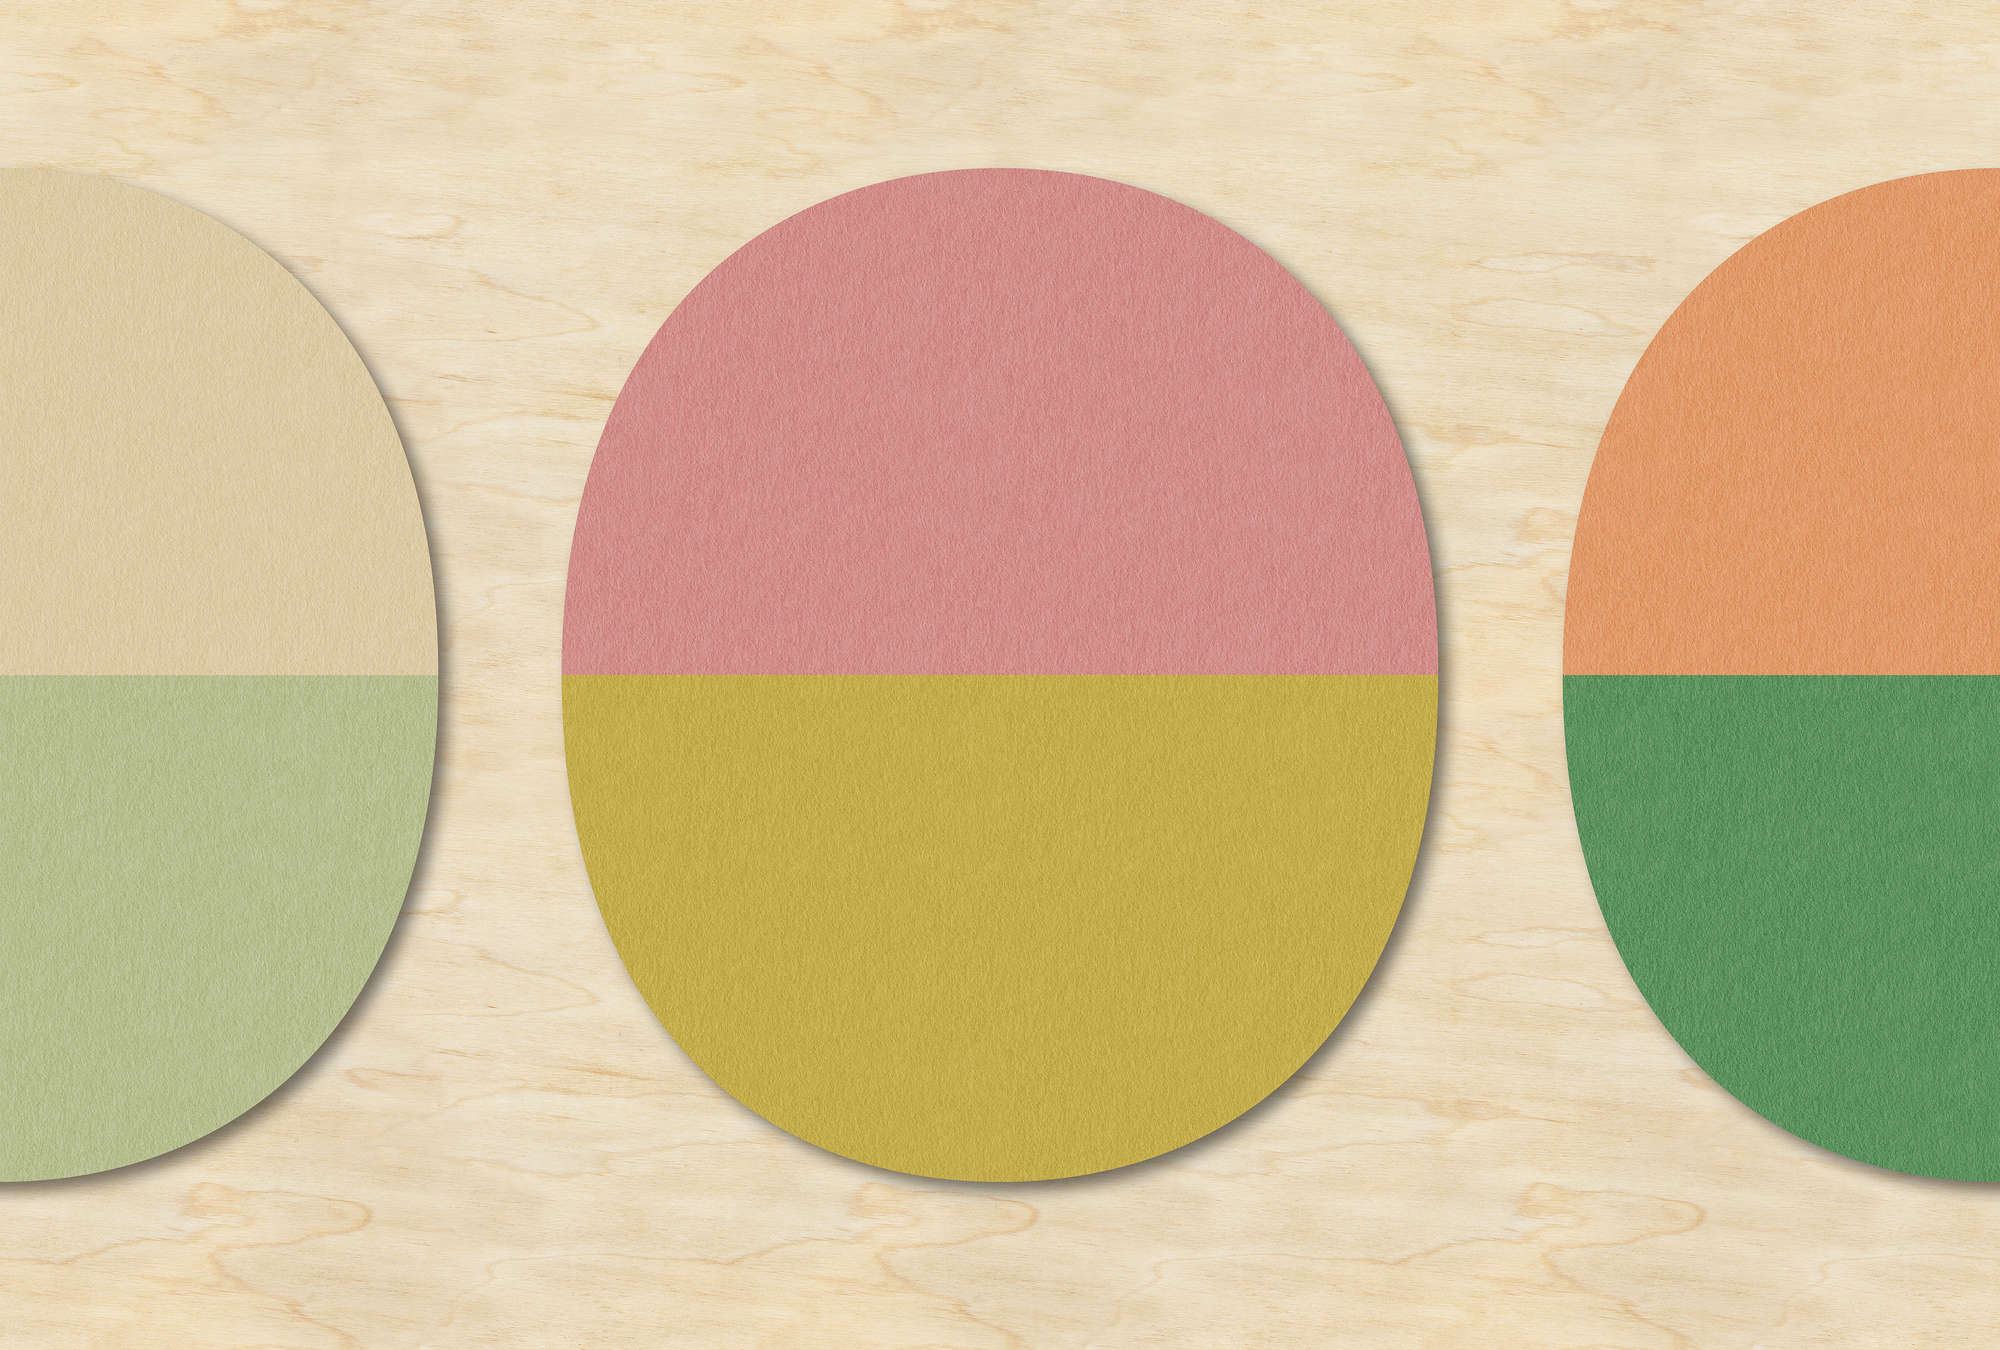             Split ovals 2 - Retro behang in multiplex, vilt structuur met kleurrijke ovalen - Beige, Groen | Pearl glad vlies
        